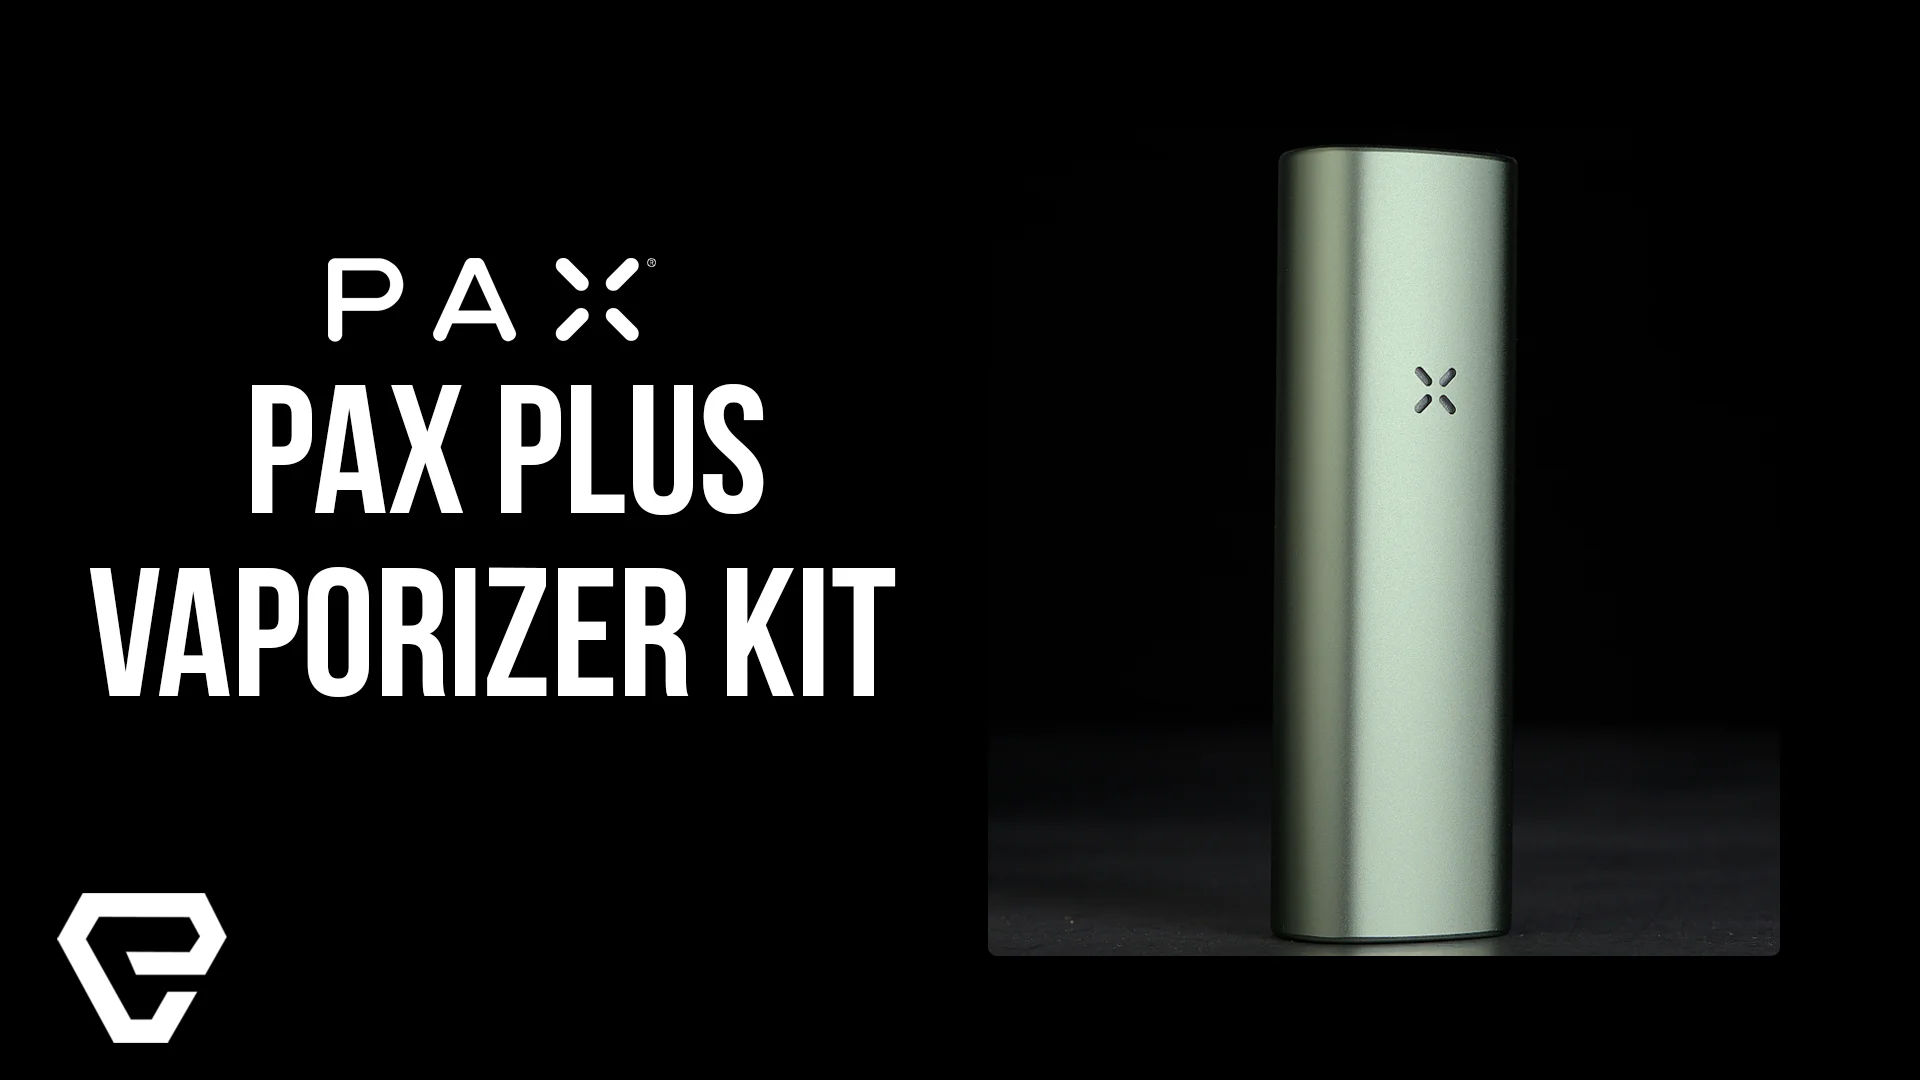 Vape Product Review: Pax Pax PLUS Vaporizer Kit on Vimeo